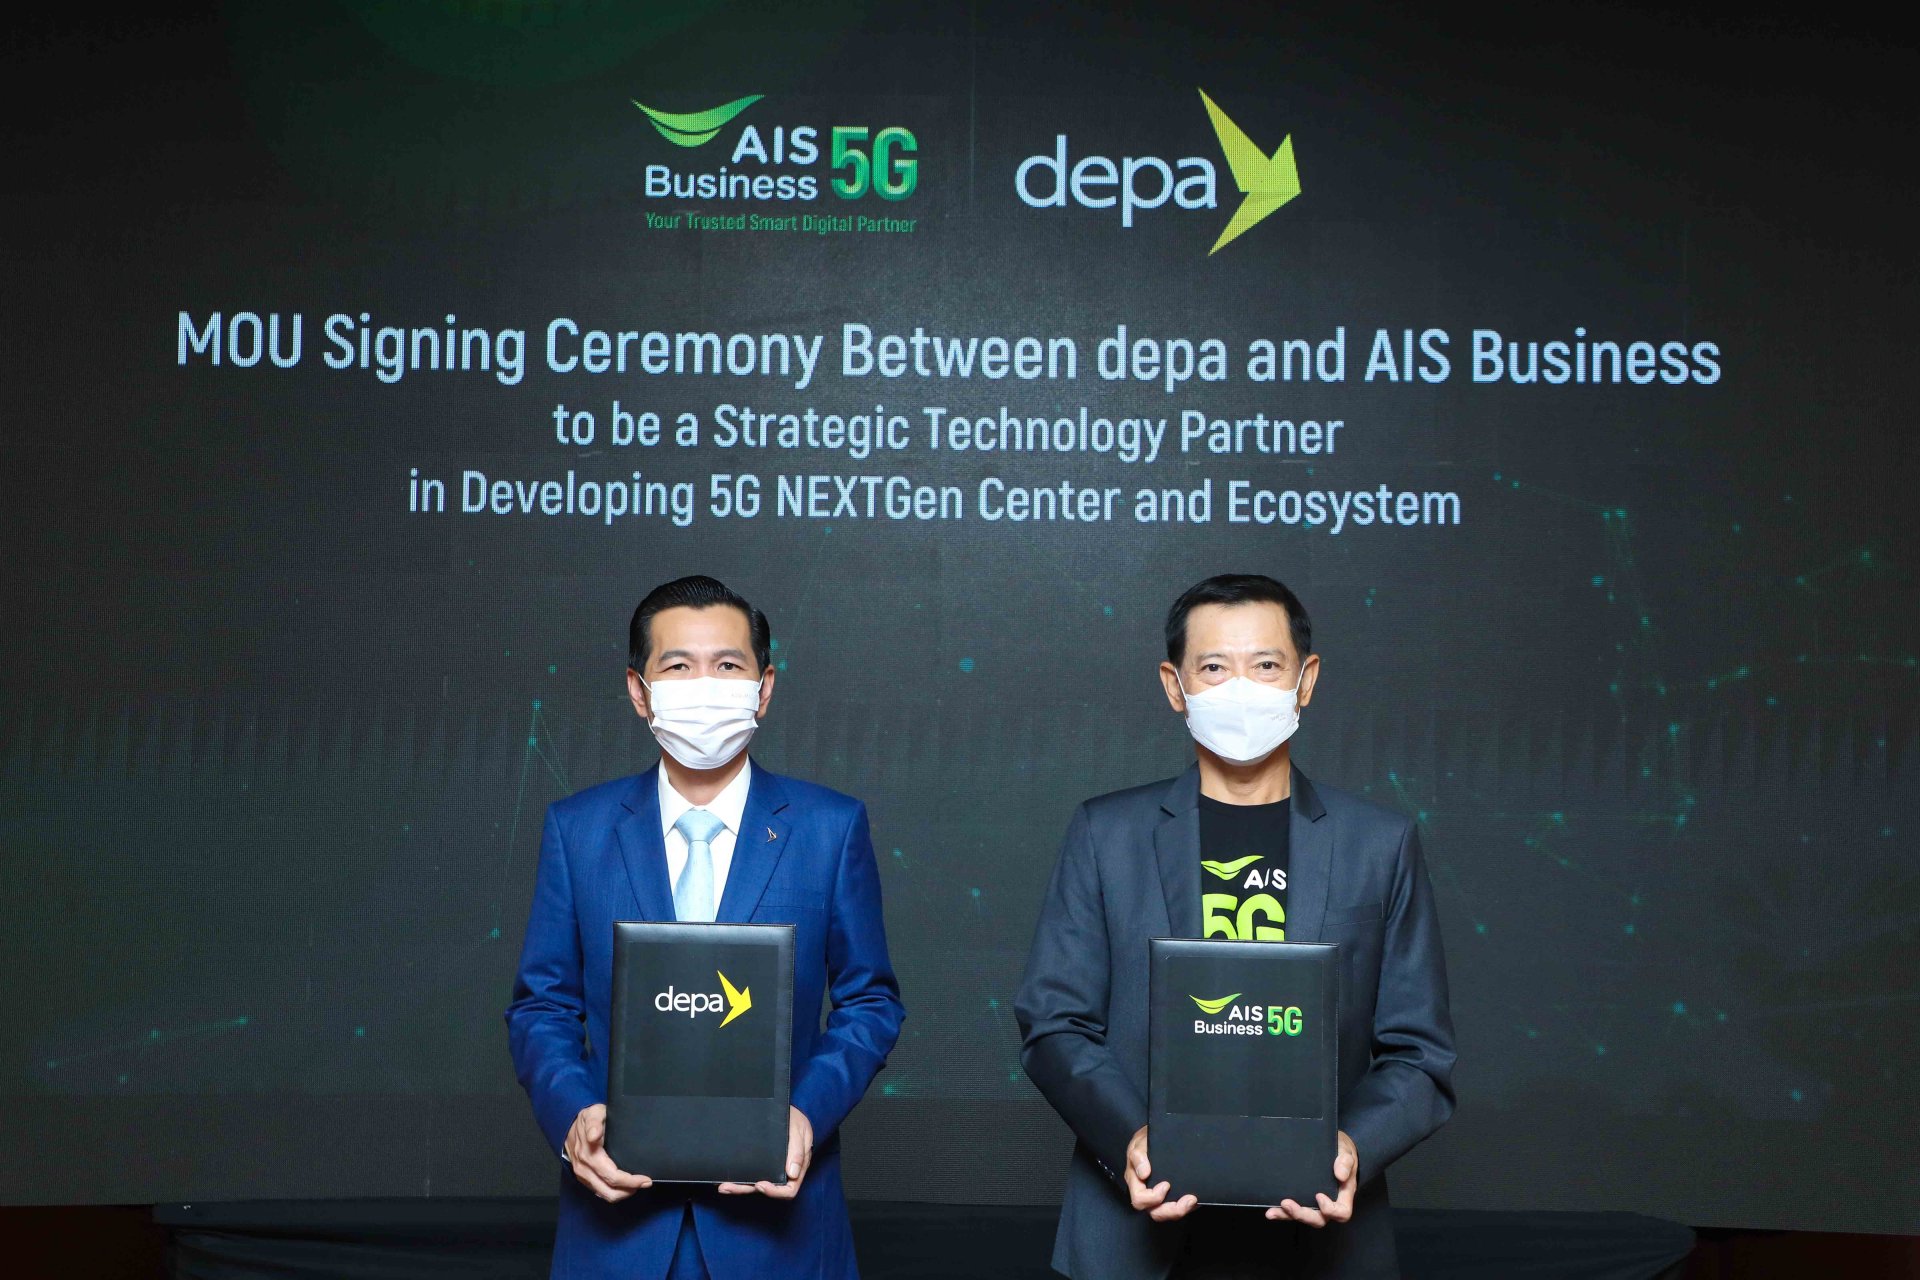 AIS Business ก้าวล้ำนำการใช้เทคโนโลยี 5G สำหรับภาคธุรกิจไทย ด้วยการผสานความร่วมมือ ดีป้า สร้างศูนย์กลางนวัตกรรมและทดสอบ 5G แห่งแรกที่ EEC พร้อมเปิดตัว AIS 5G NEXTGen Platform สำหรับการพัฒนา 5G Applications แห่งแรกในไทย